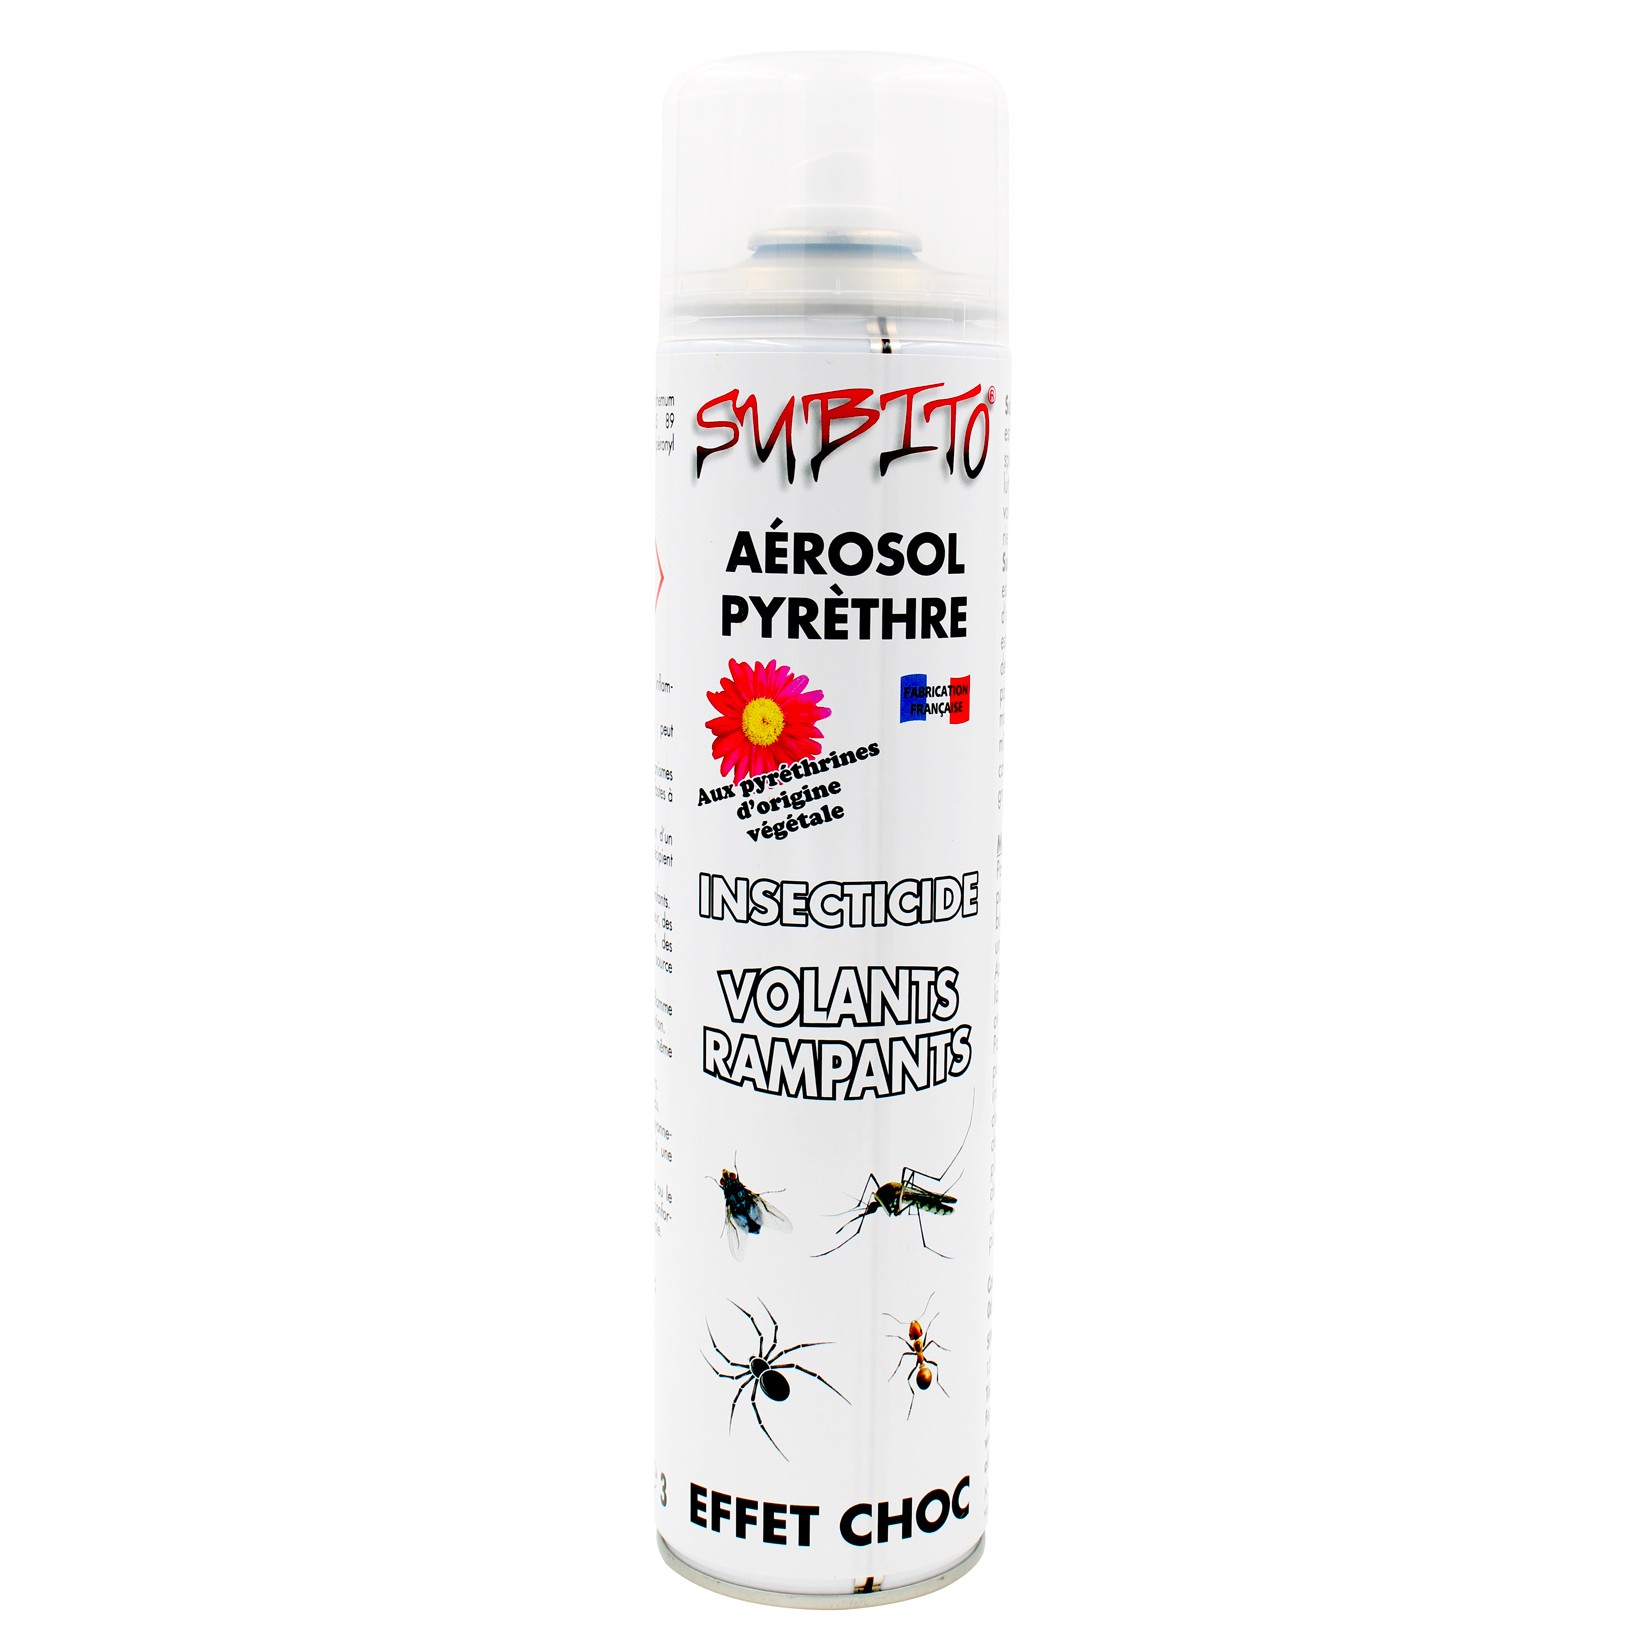 Aérosol au Pyrèthre anti-insectes volants et rampants 600 ml de Subito | Insecticide Antinuisible Qualité Professionnelle